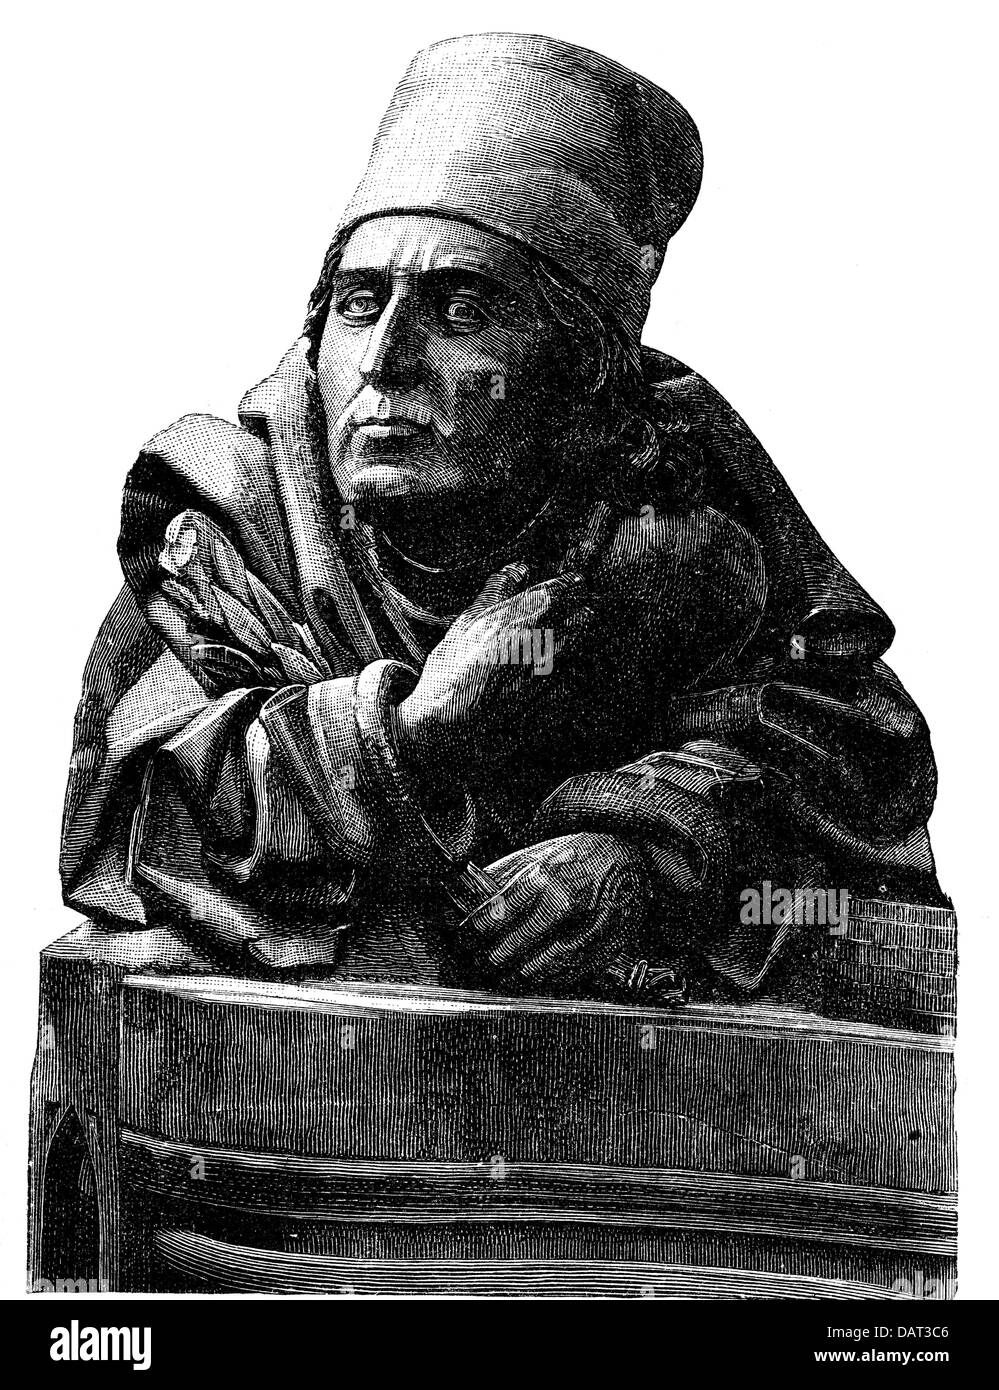 Syrlin, Joerg, vers 1425 - 1491, artiste allemand (sculpteur), auto-mi-longueur, buste de Virginie dans les stands de chœur de Syrlin, vers 1470, Banque D'Images